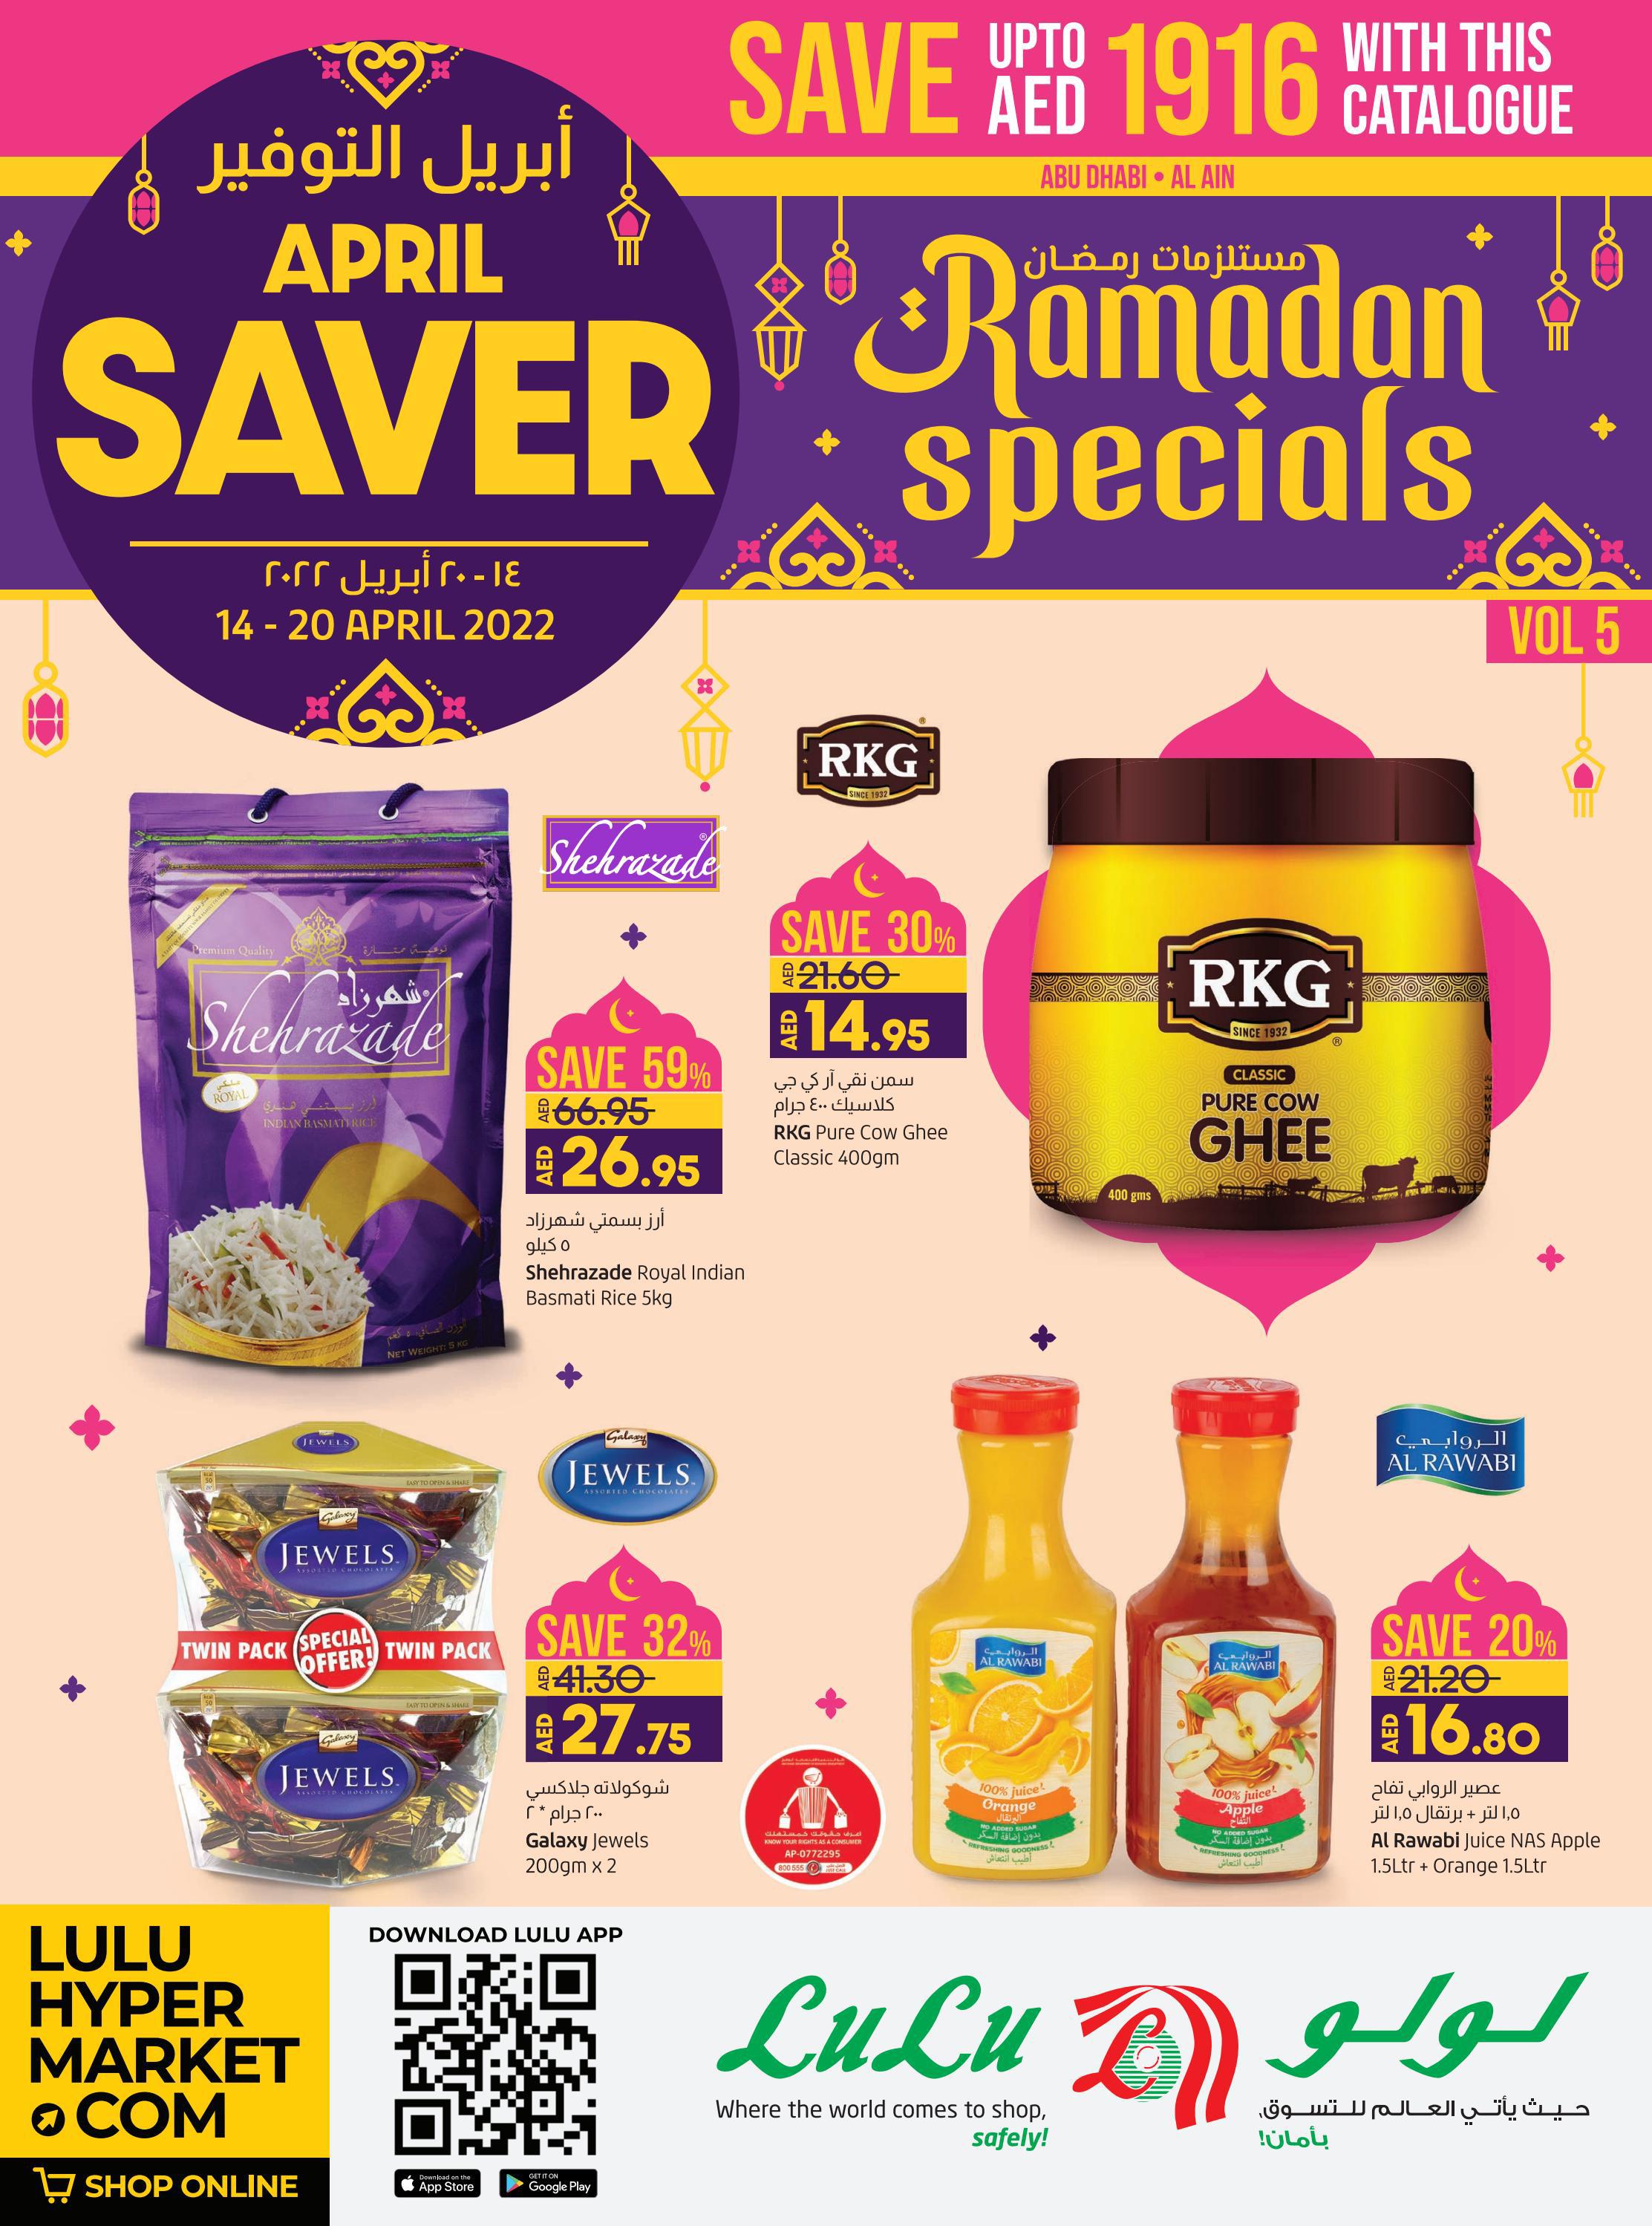 Lulu Hypermarket Ramadan Special Offers